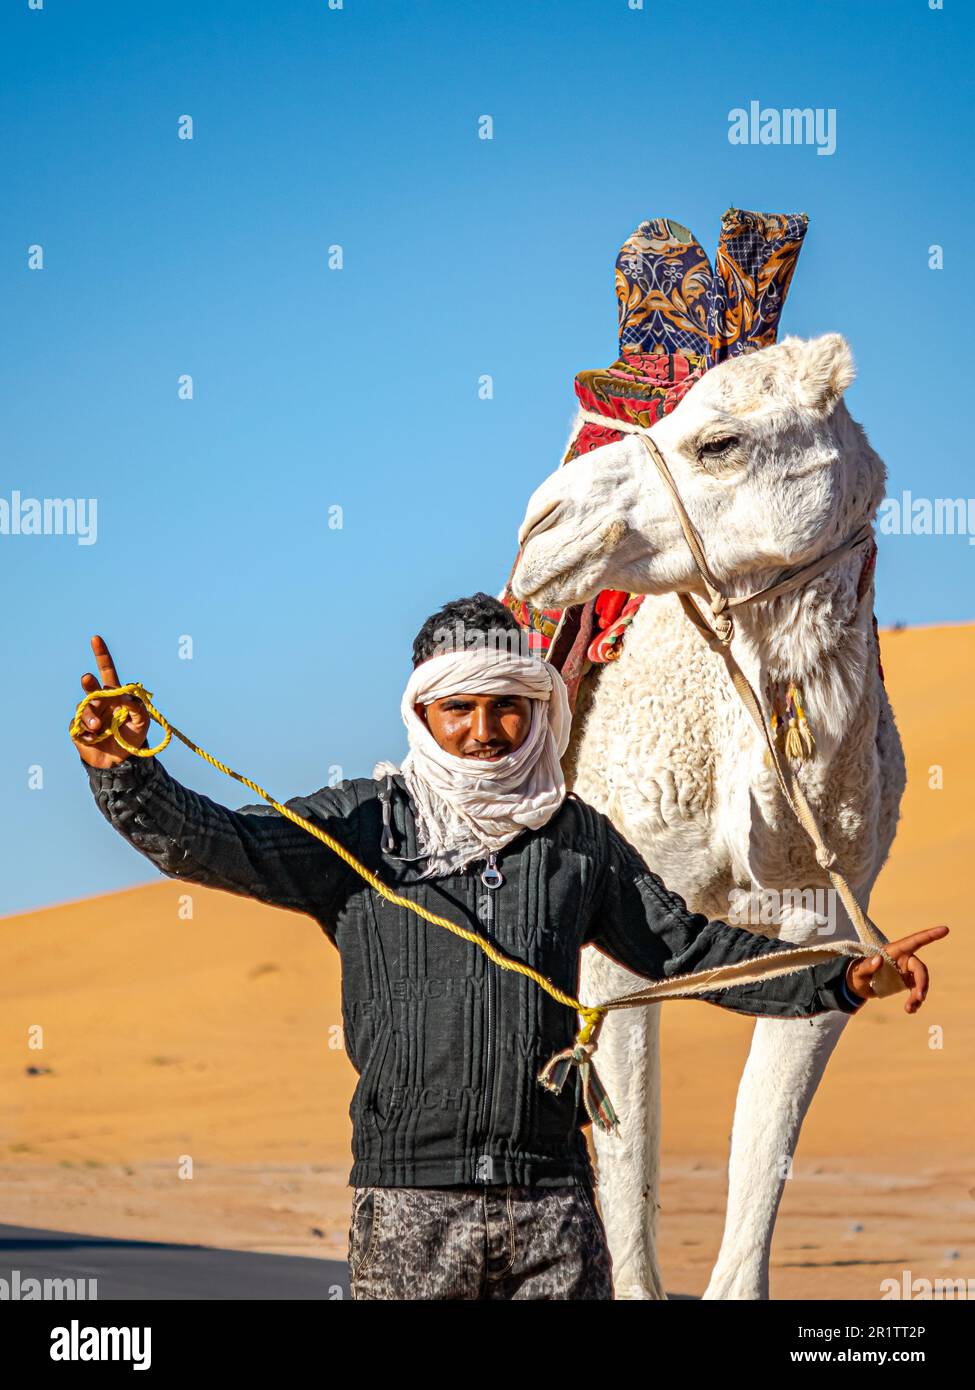 tuareg local marchant et posant avec son dromadaire blanc décoré de toile rouge selle dans le désert du Sahara avec dunes de sable et ciel bleu. Banque D'Images